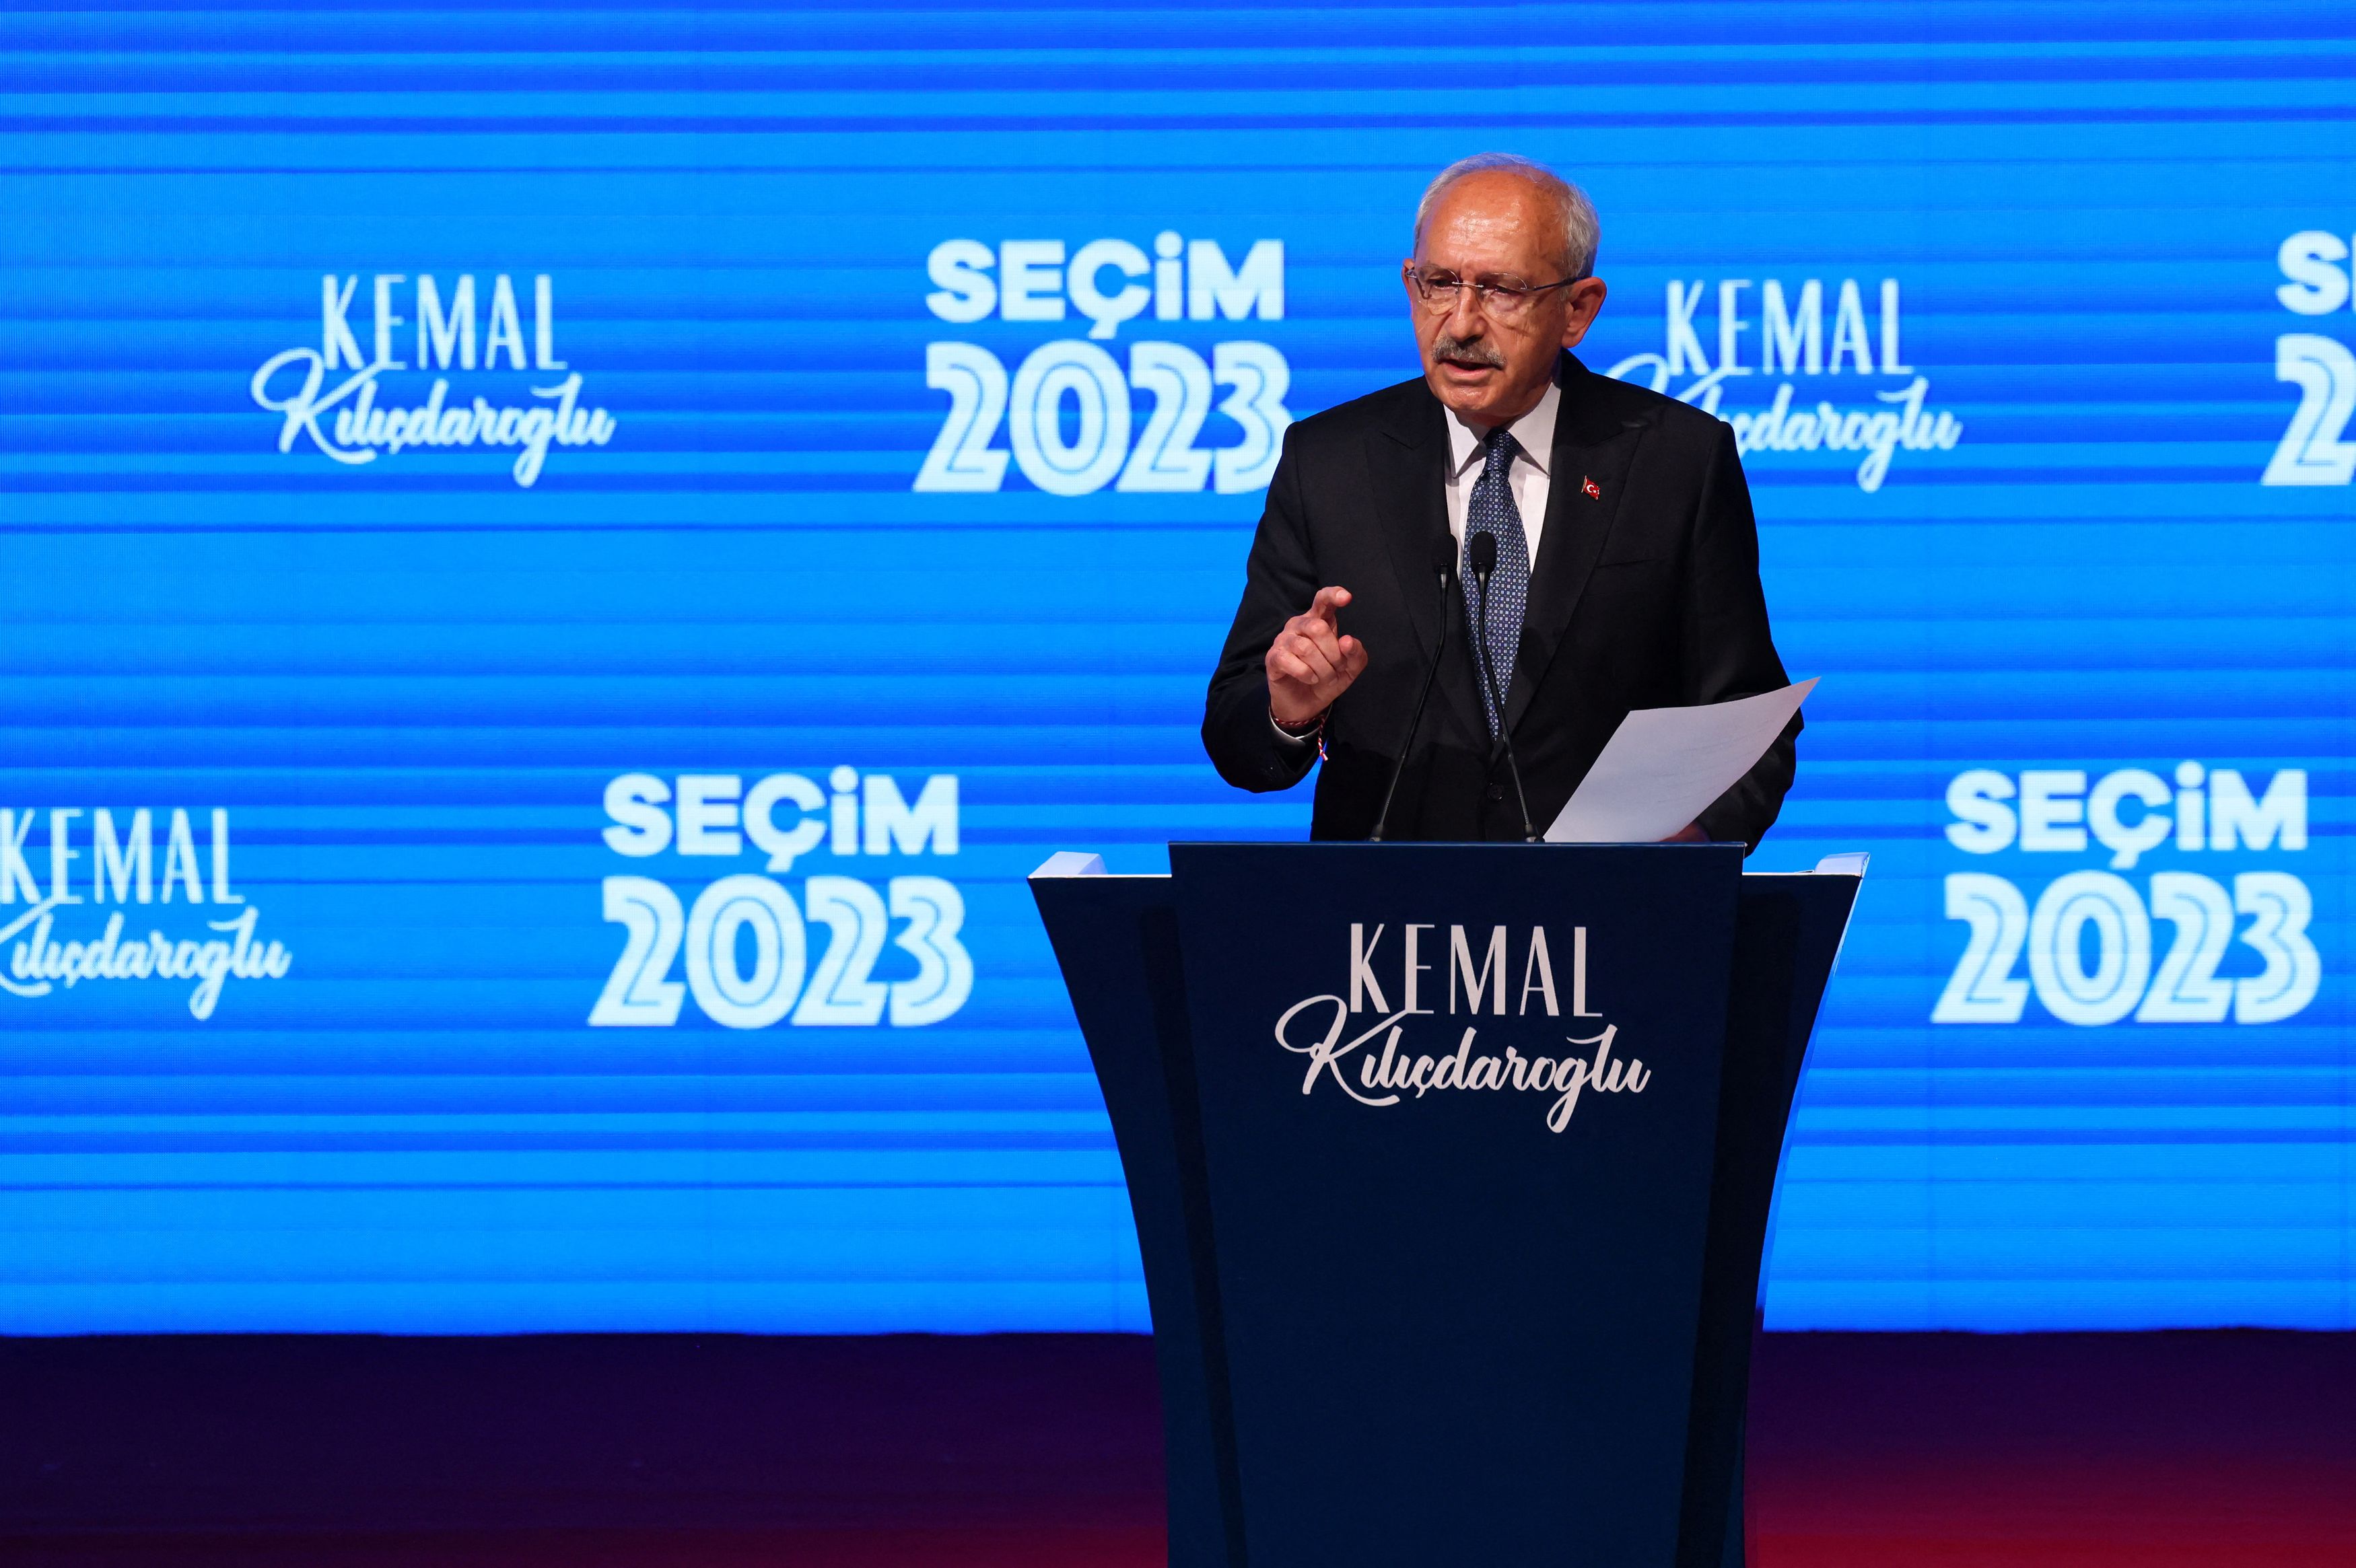 Εκλογές Τουρκία: Επιμένει για «χειραγώγηση» του αποτελέσματος ο Κιλιτσντάρογλου - «Το Ανώτατο Εκλογικό Συμβούλιο να αναλάβει τις ευθύνες του»